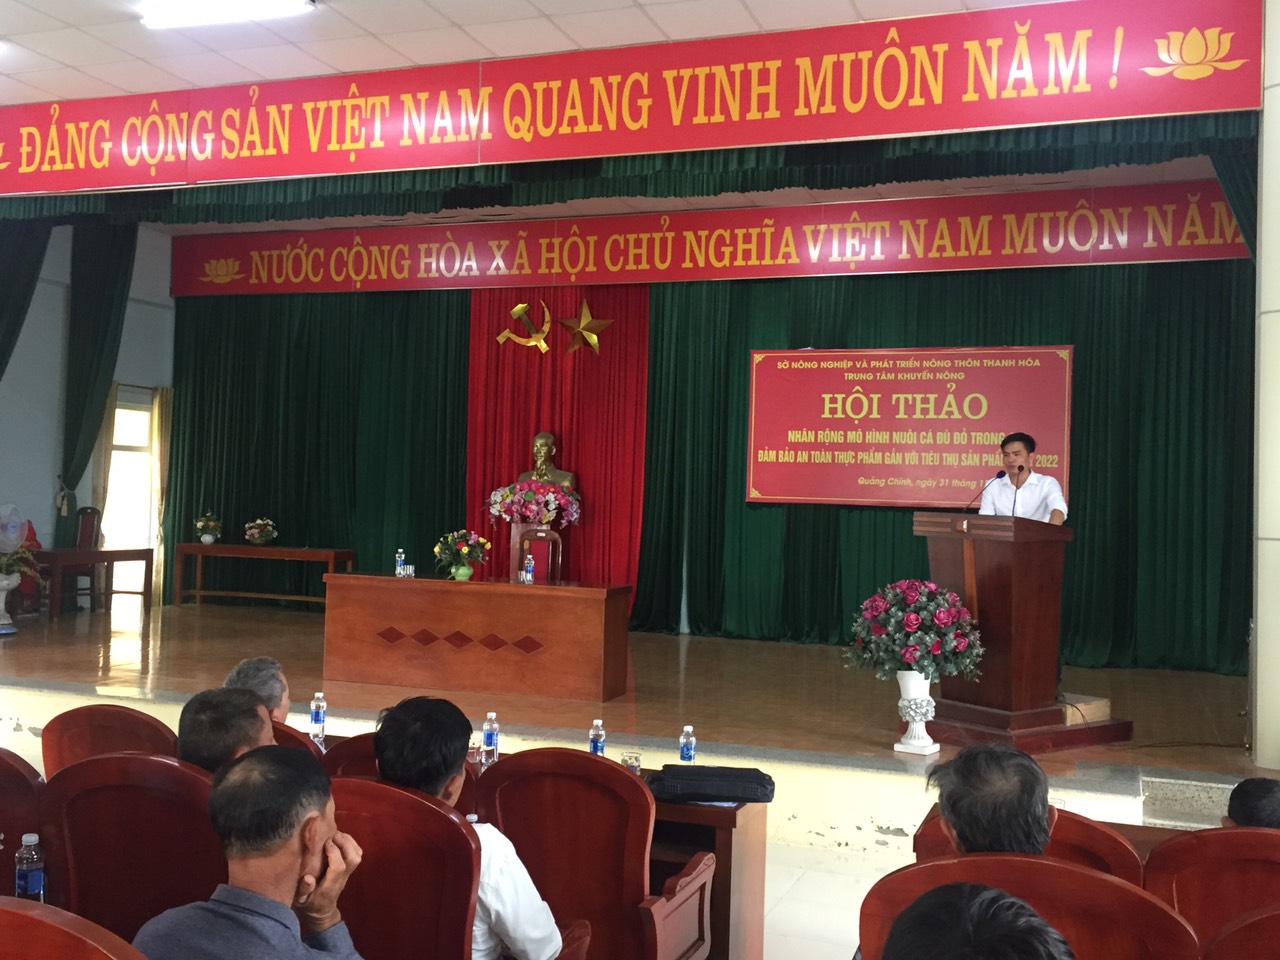 Ngày 31/10/2022 UBND xã Quảng Chính; TTHTCĐ tổ chức lớp tập huấn nuôi cá Đù Đỏ trong ao cho các hộ dân trong xã.